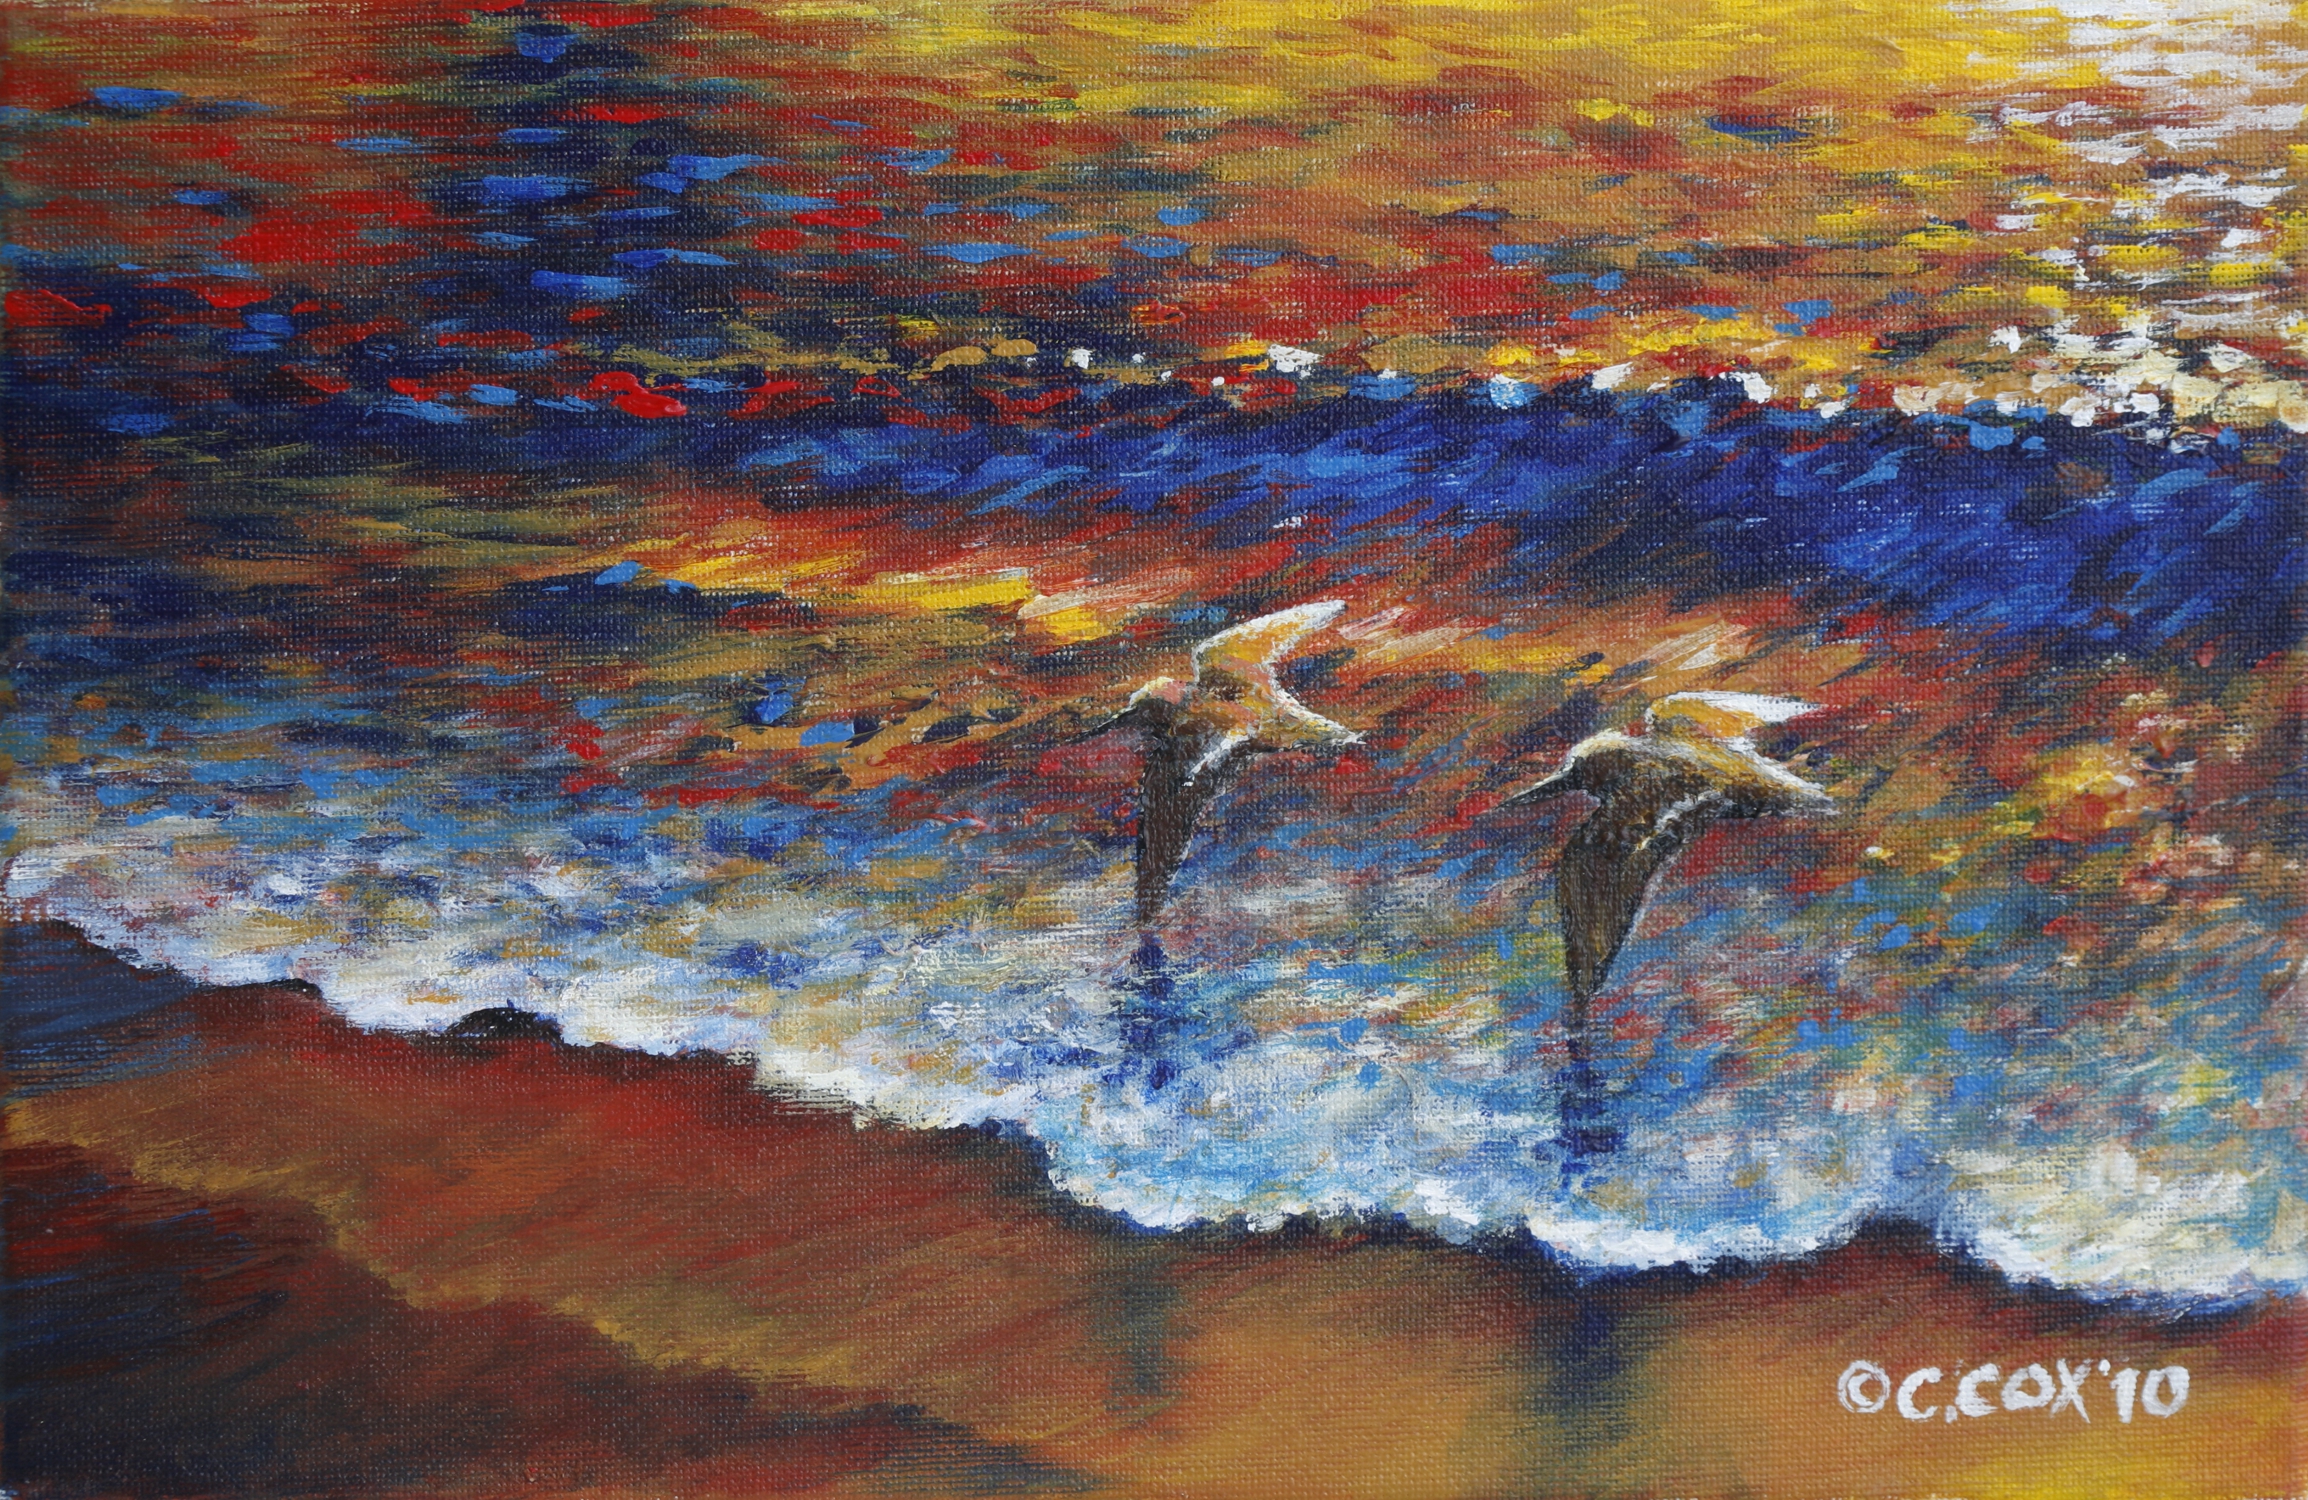 Surfbirds, Acrylic on canvas, 8x12"